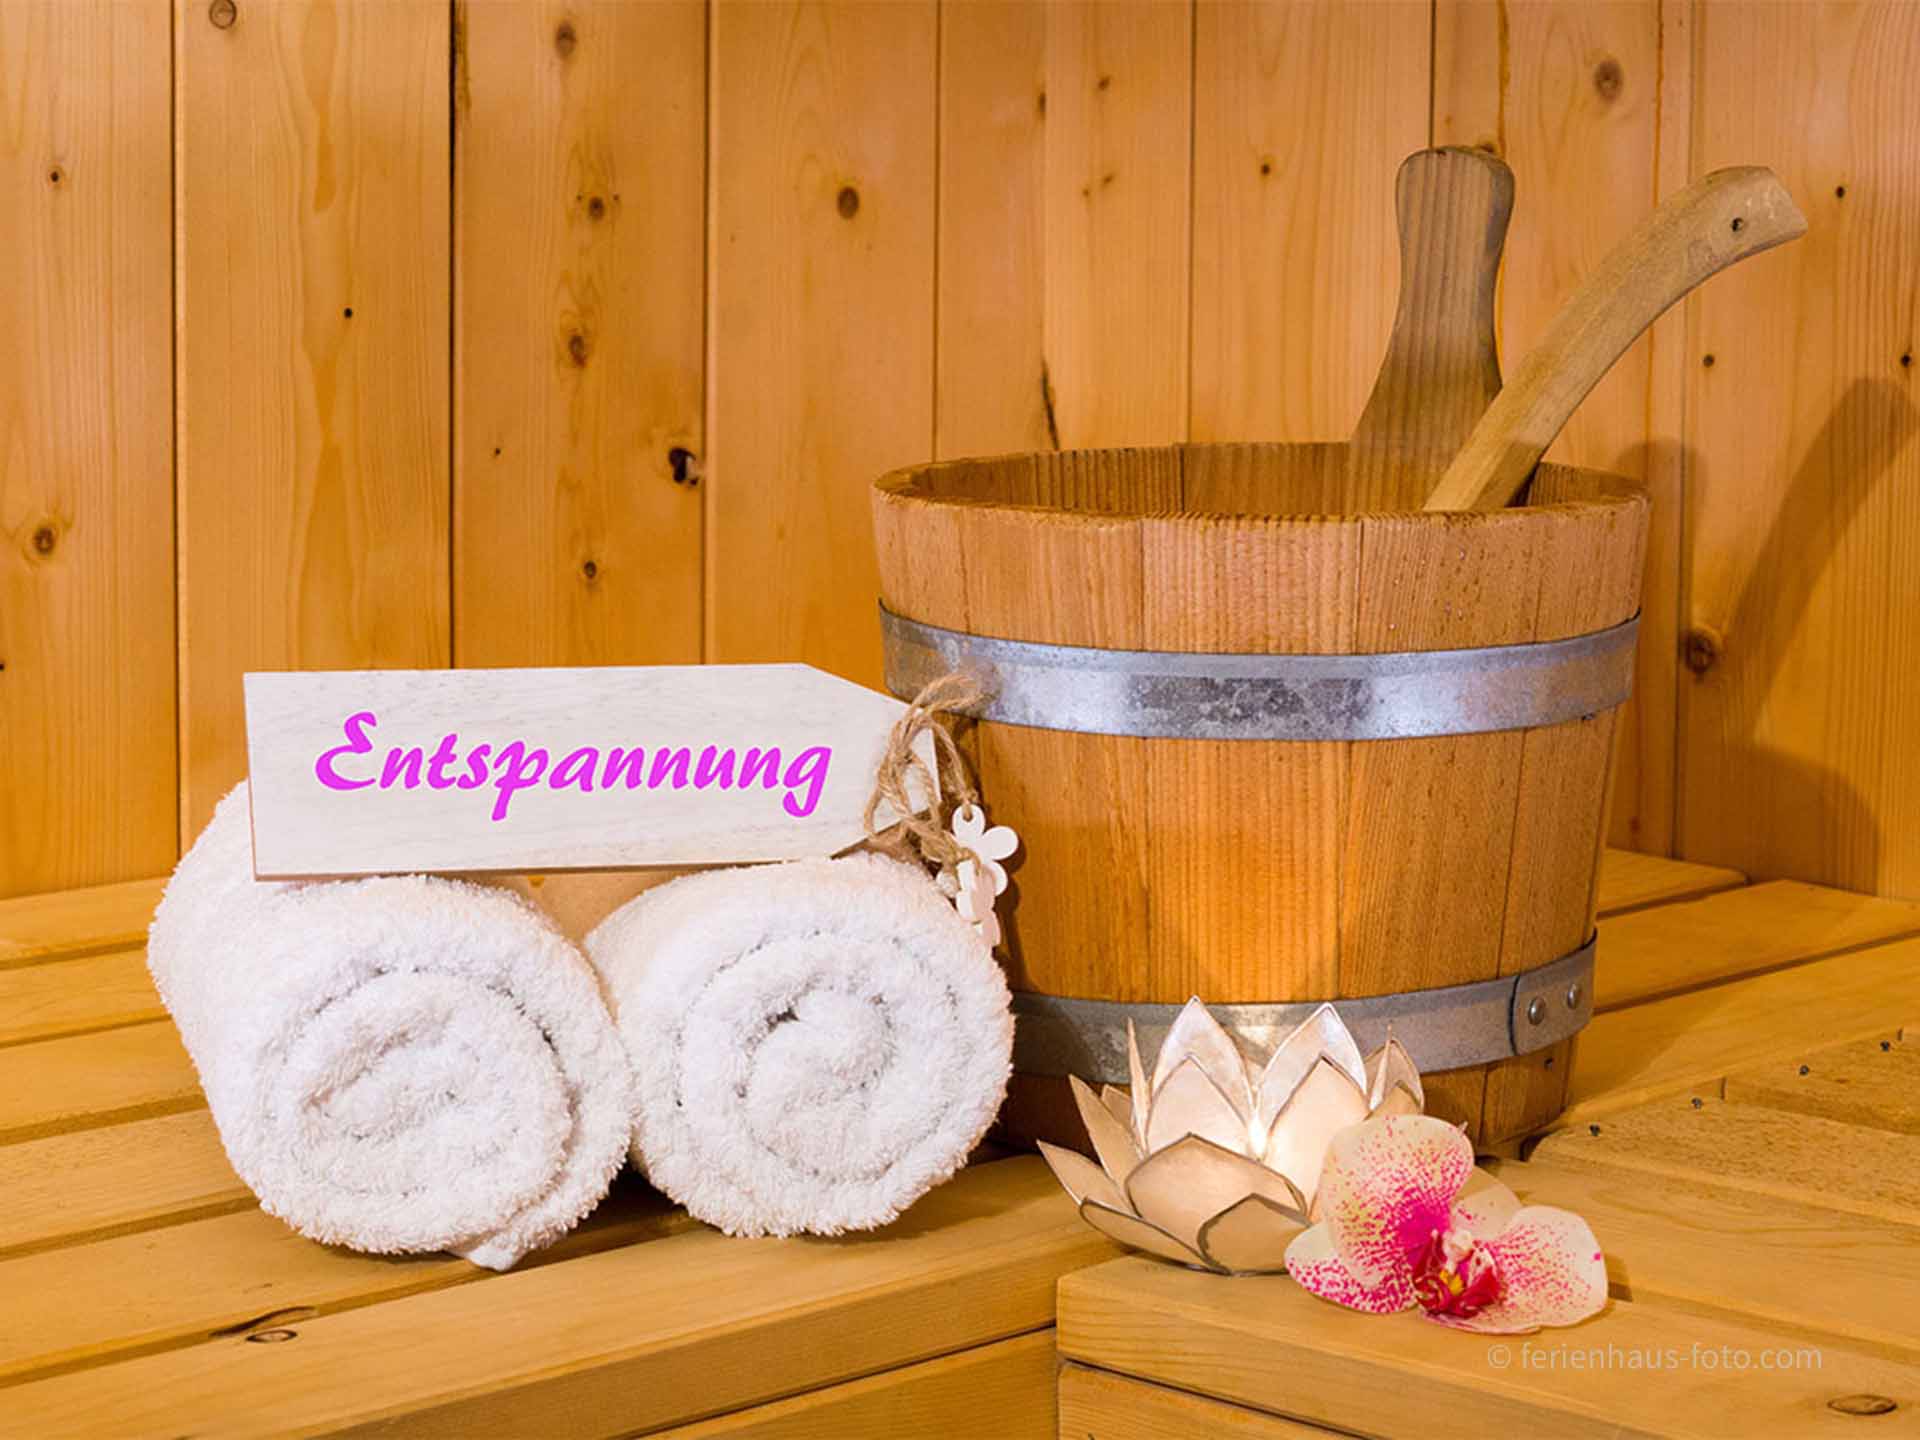 hotelfotograf schild in sauna beschriftet und handtücher und saunaeimer